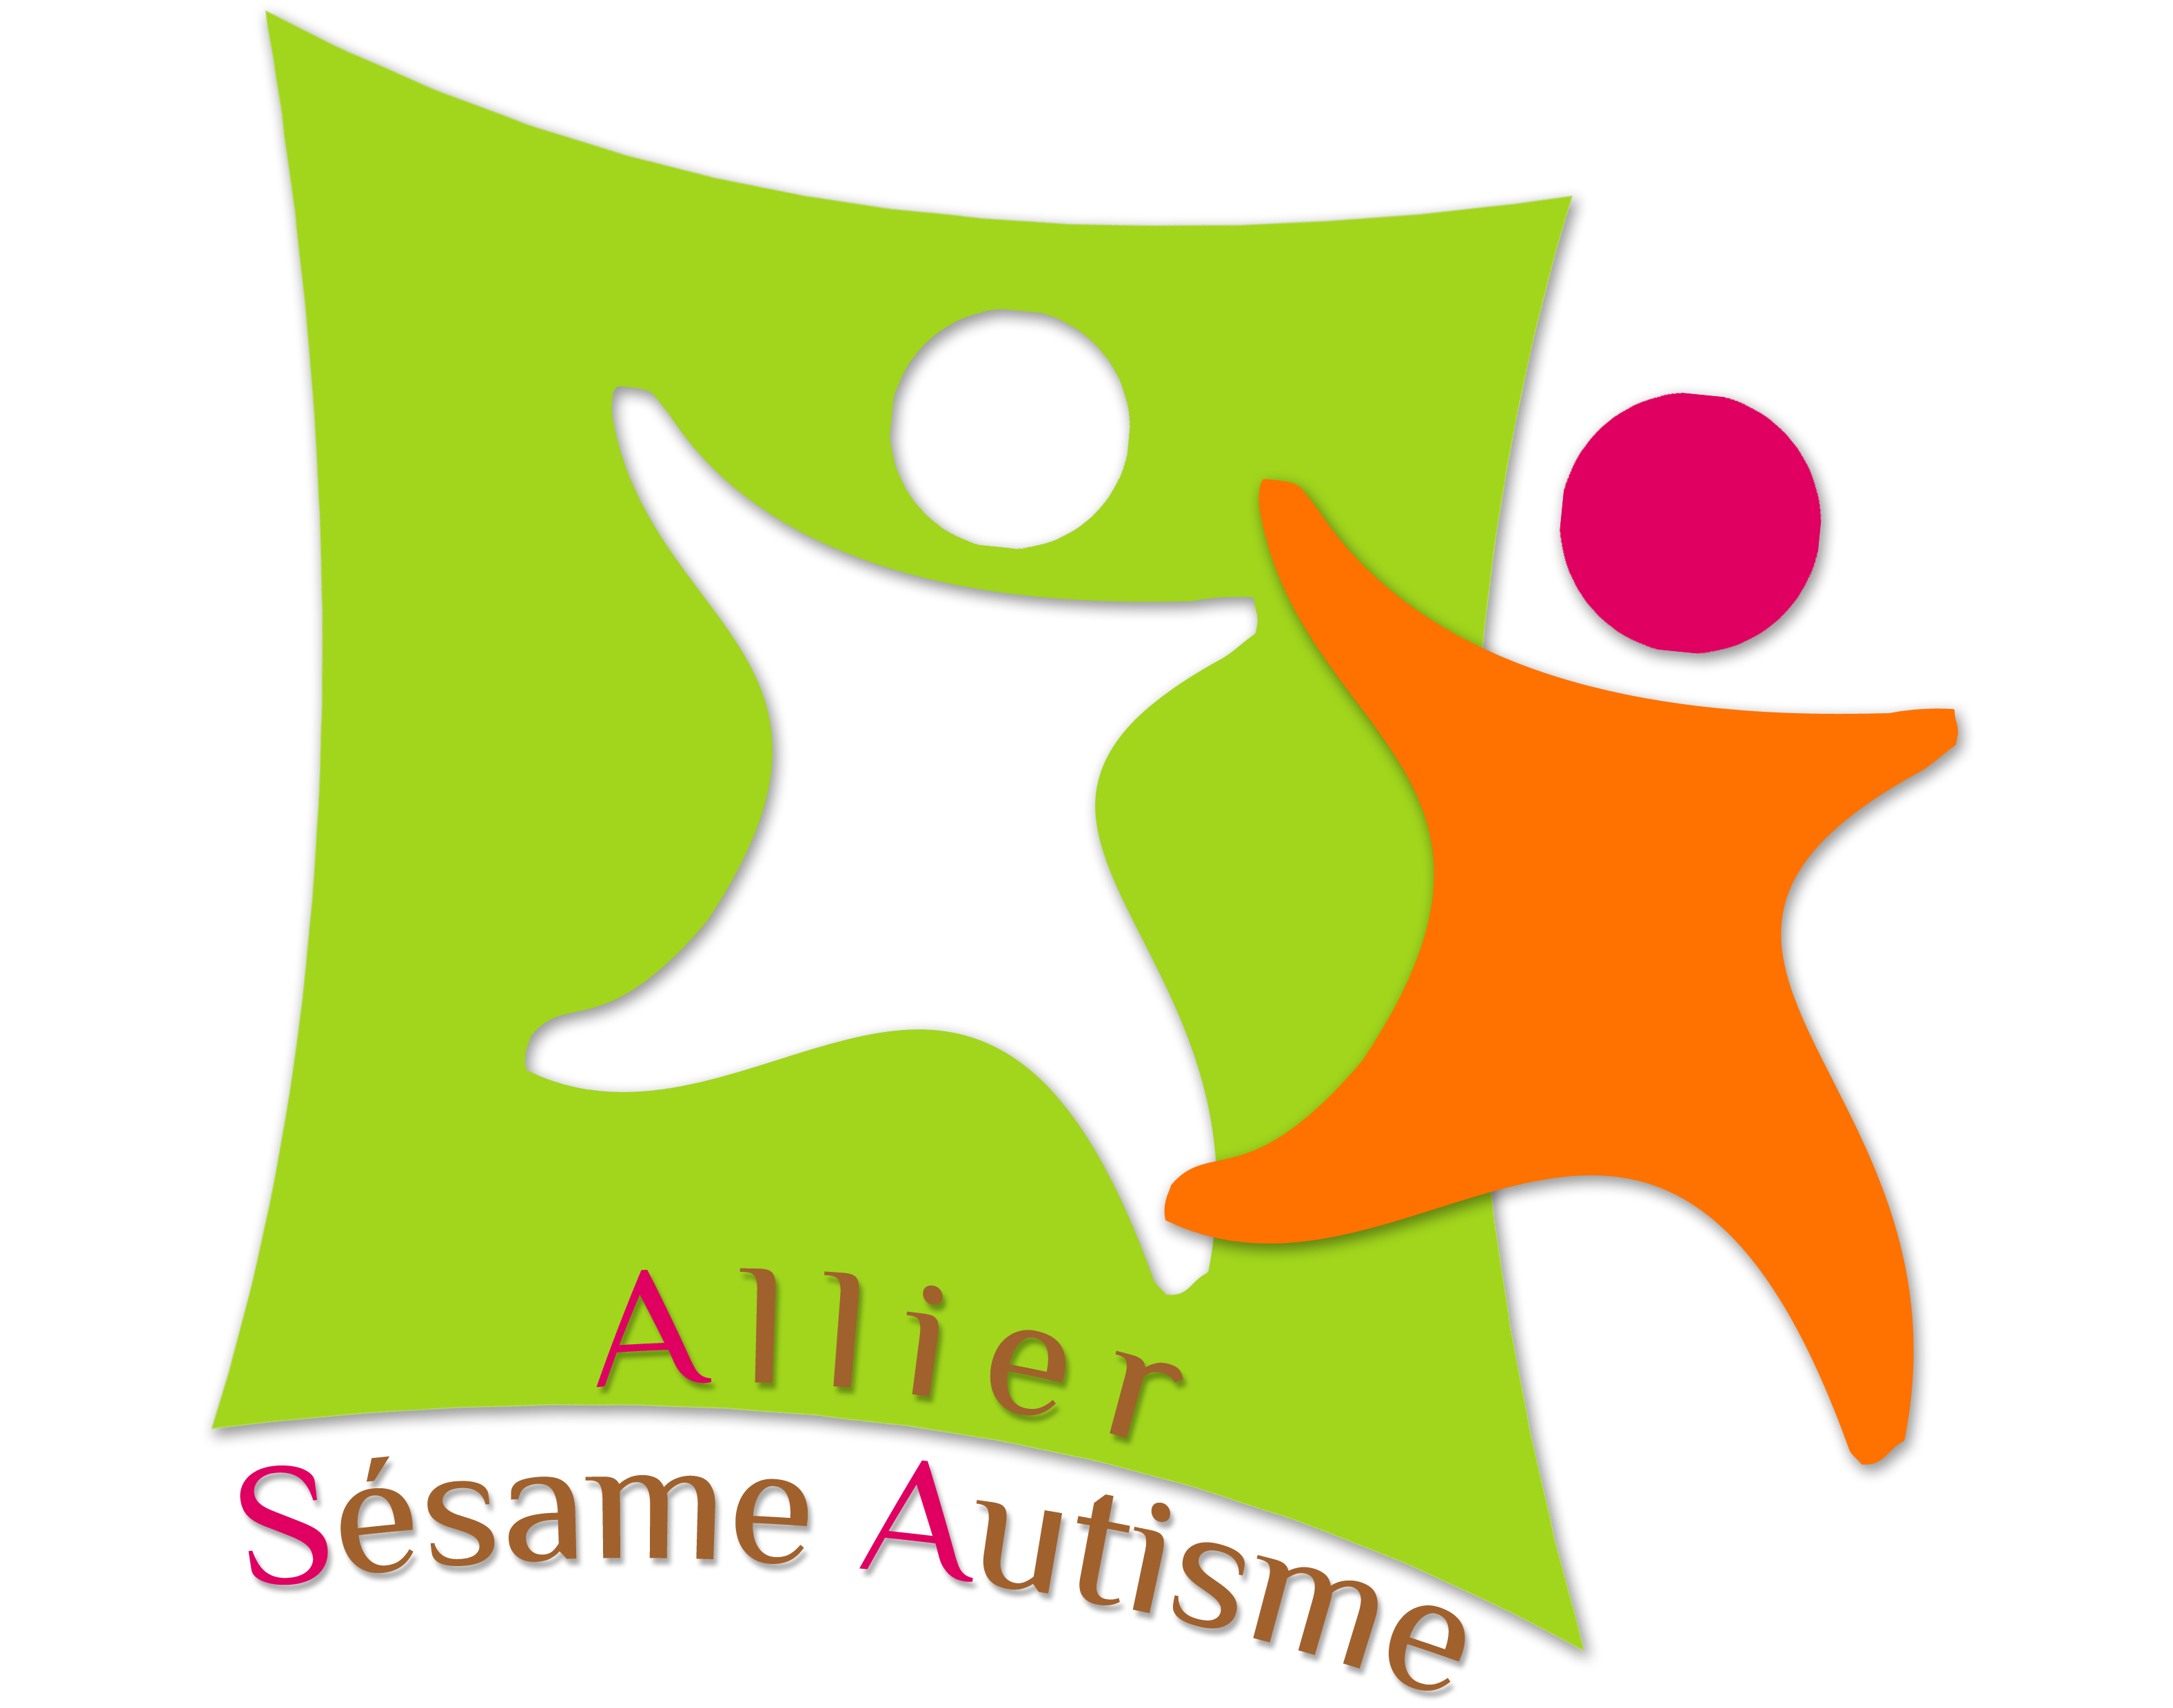 Logo Allier Sesame Autisme